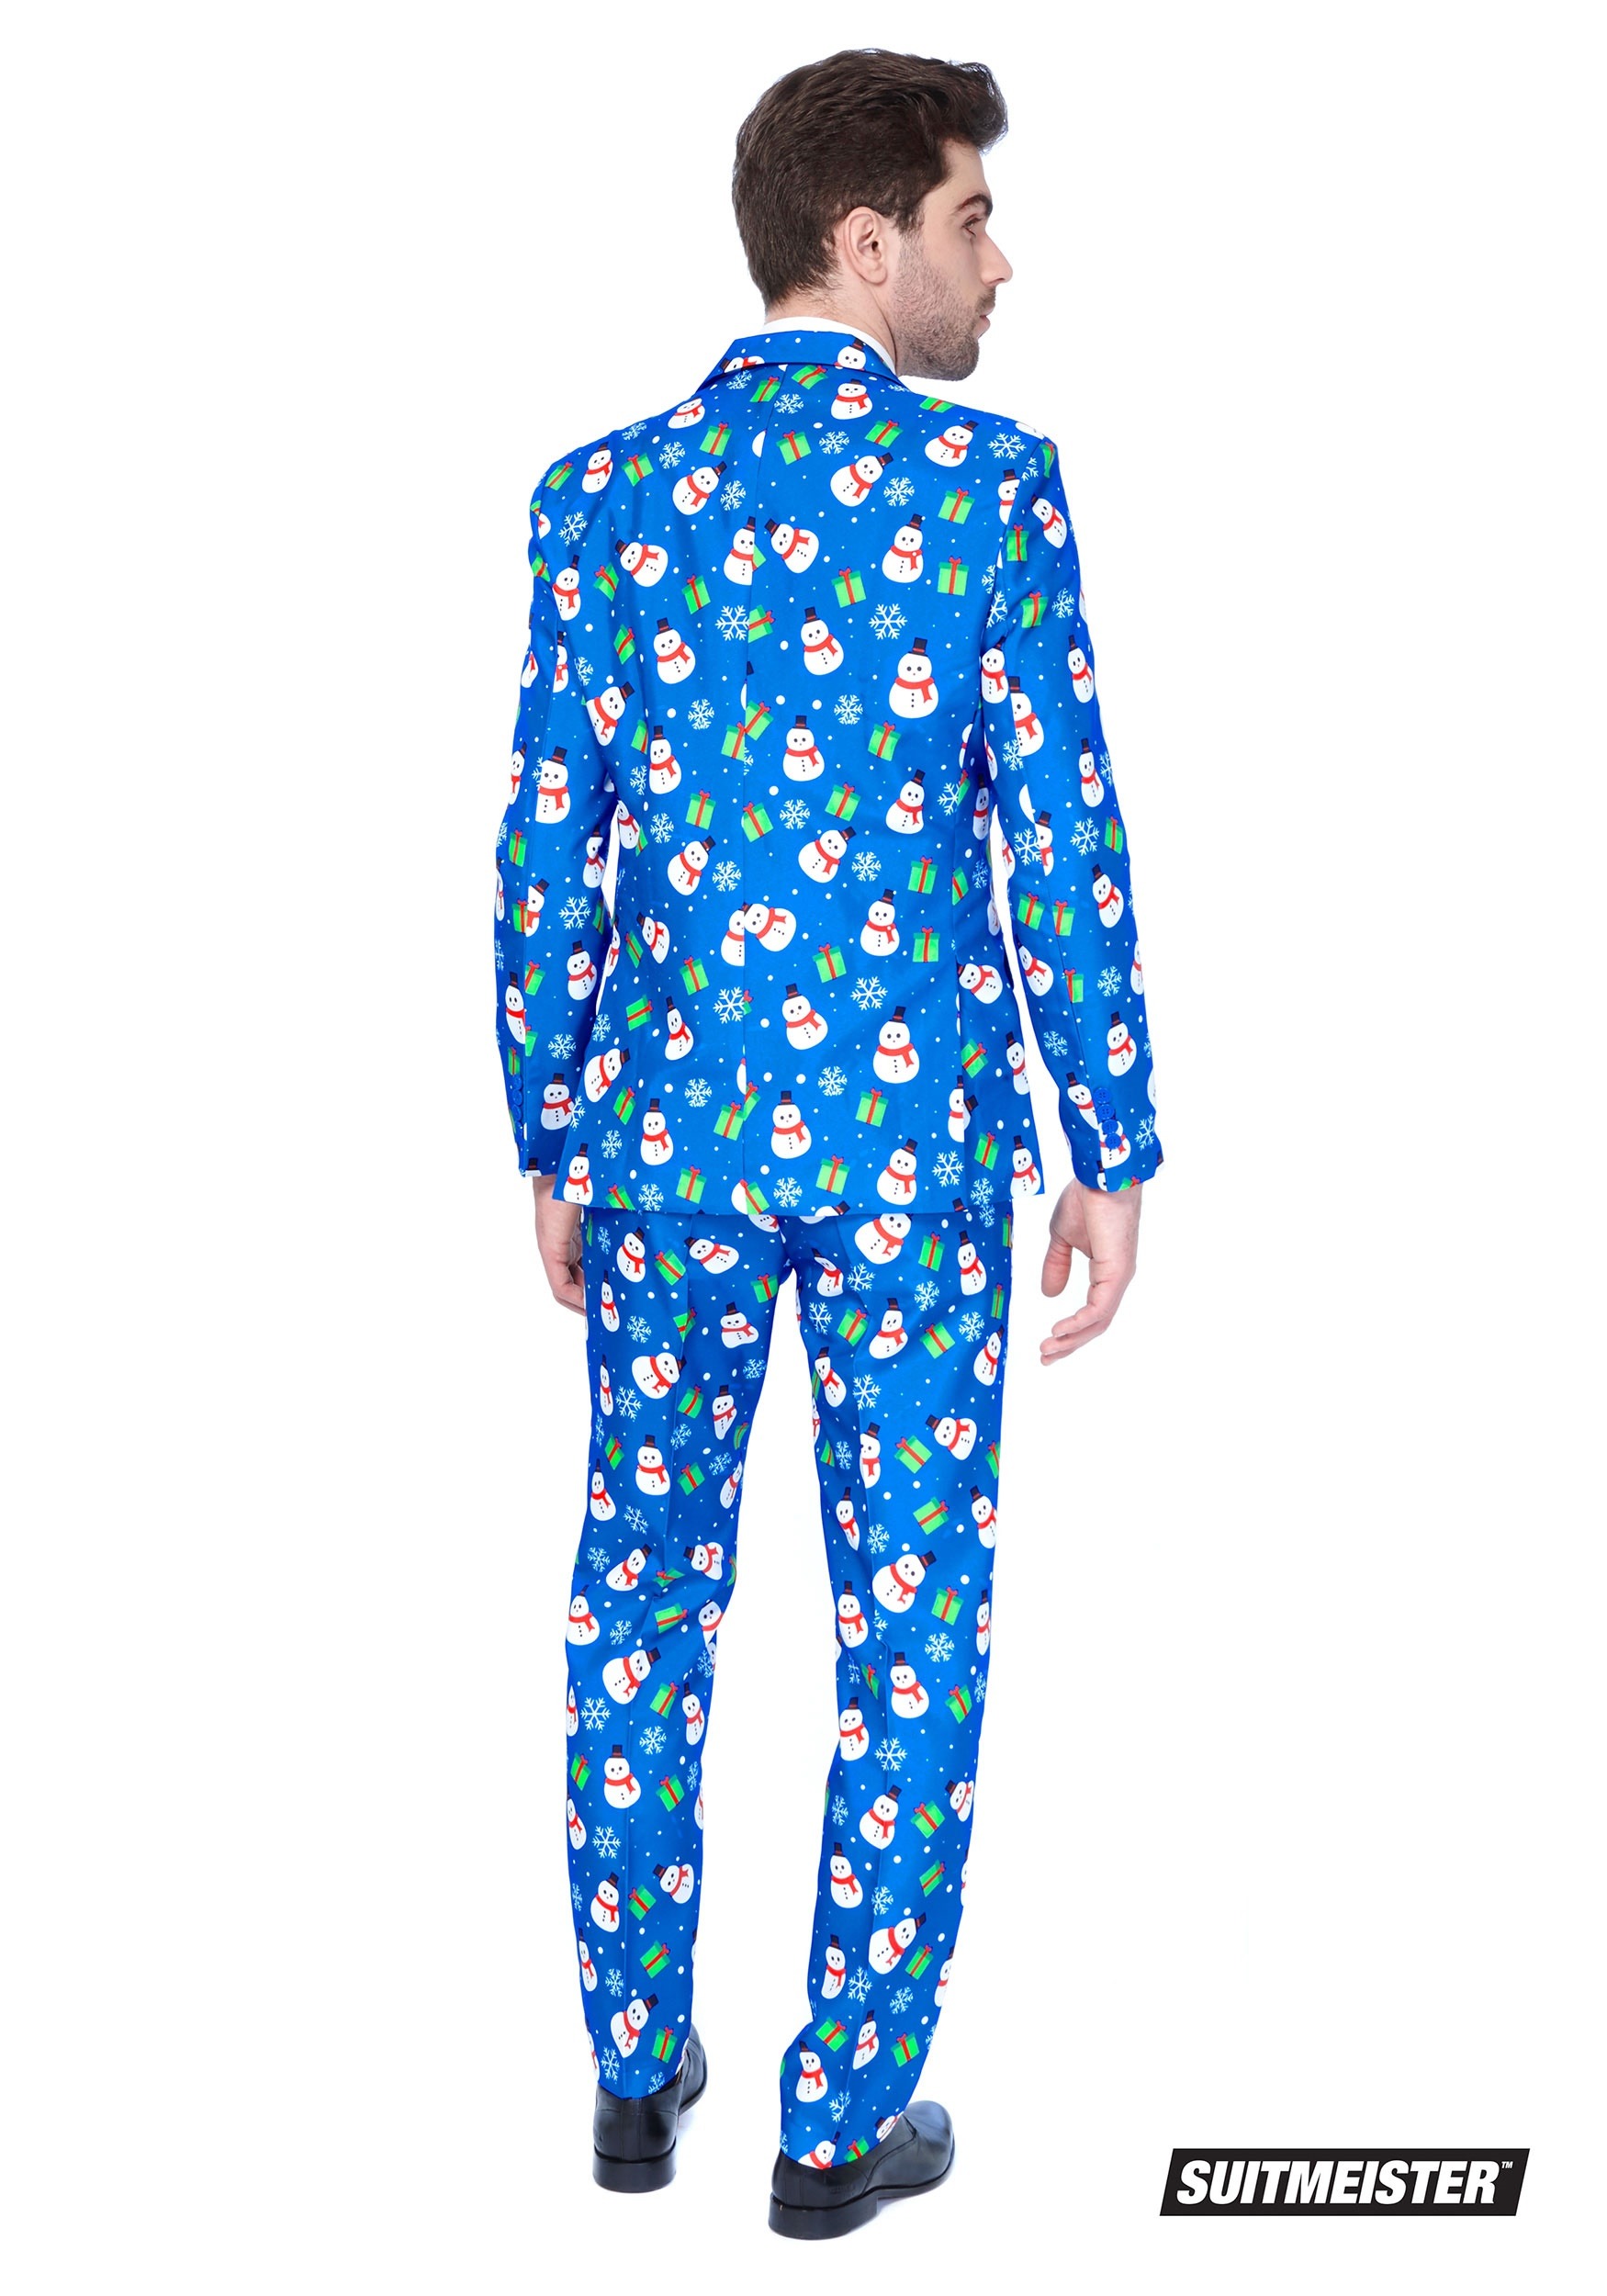 Blue Snowman Suitmeister Suit For Men